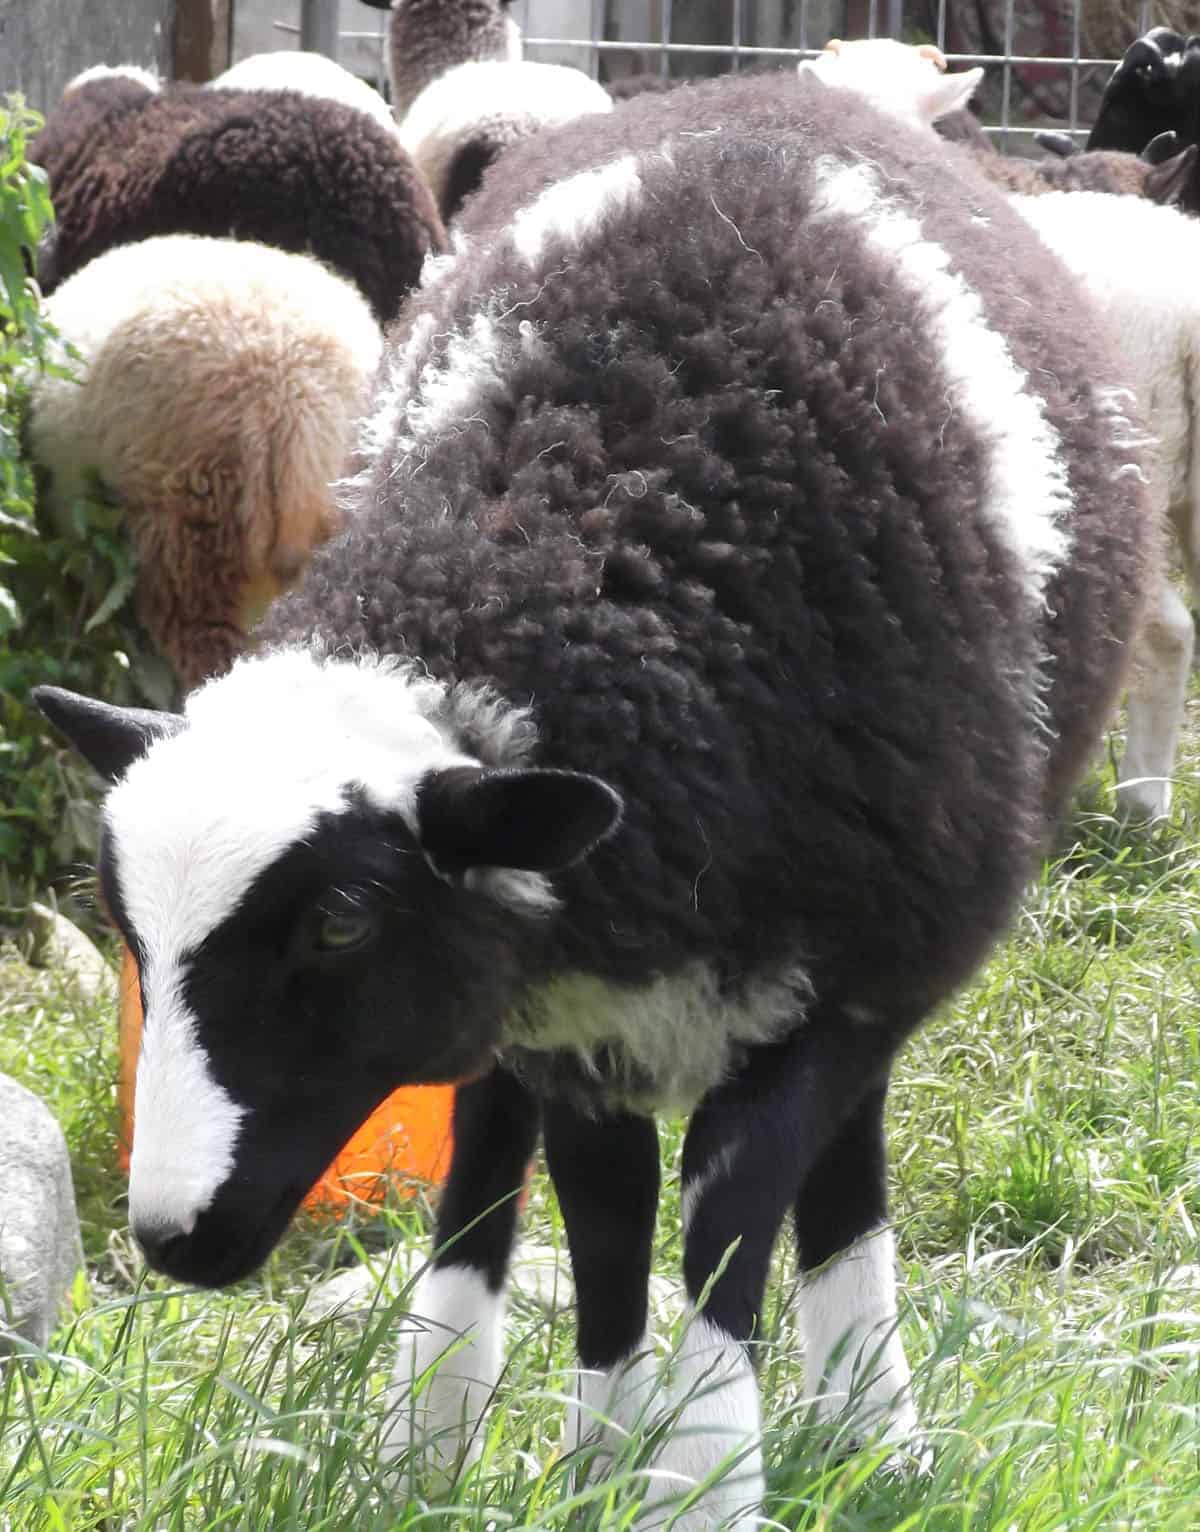 Holly pet lamb sheep jacob cross shetland spotted black grey white wales gwynedd kids farm life lamb